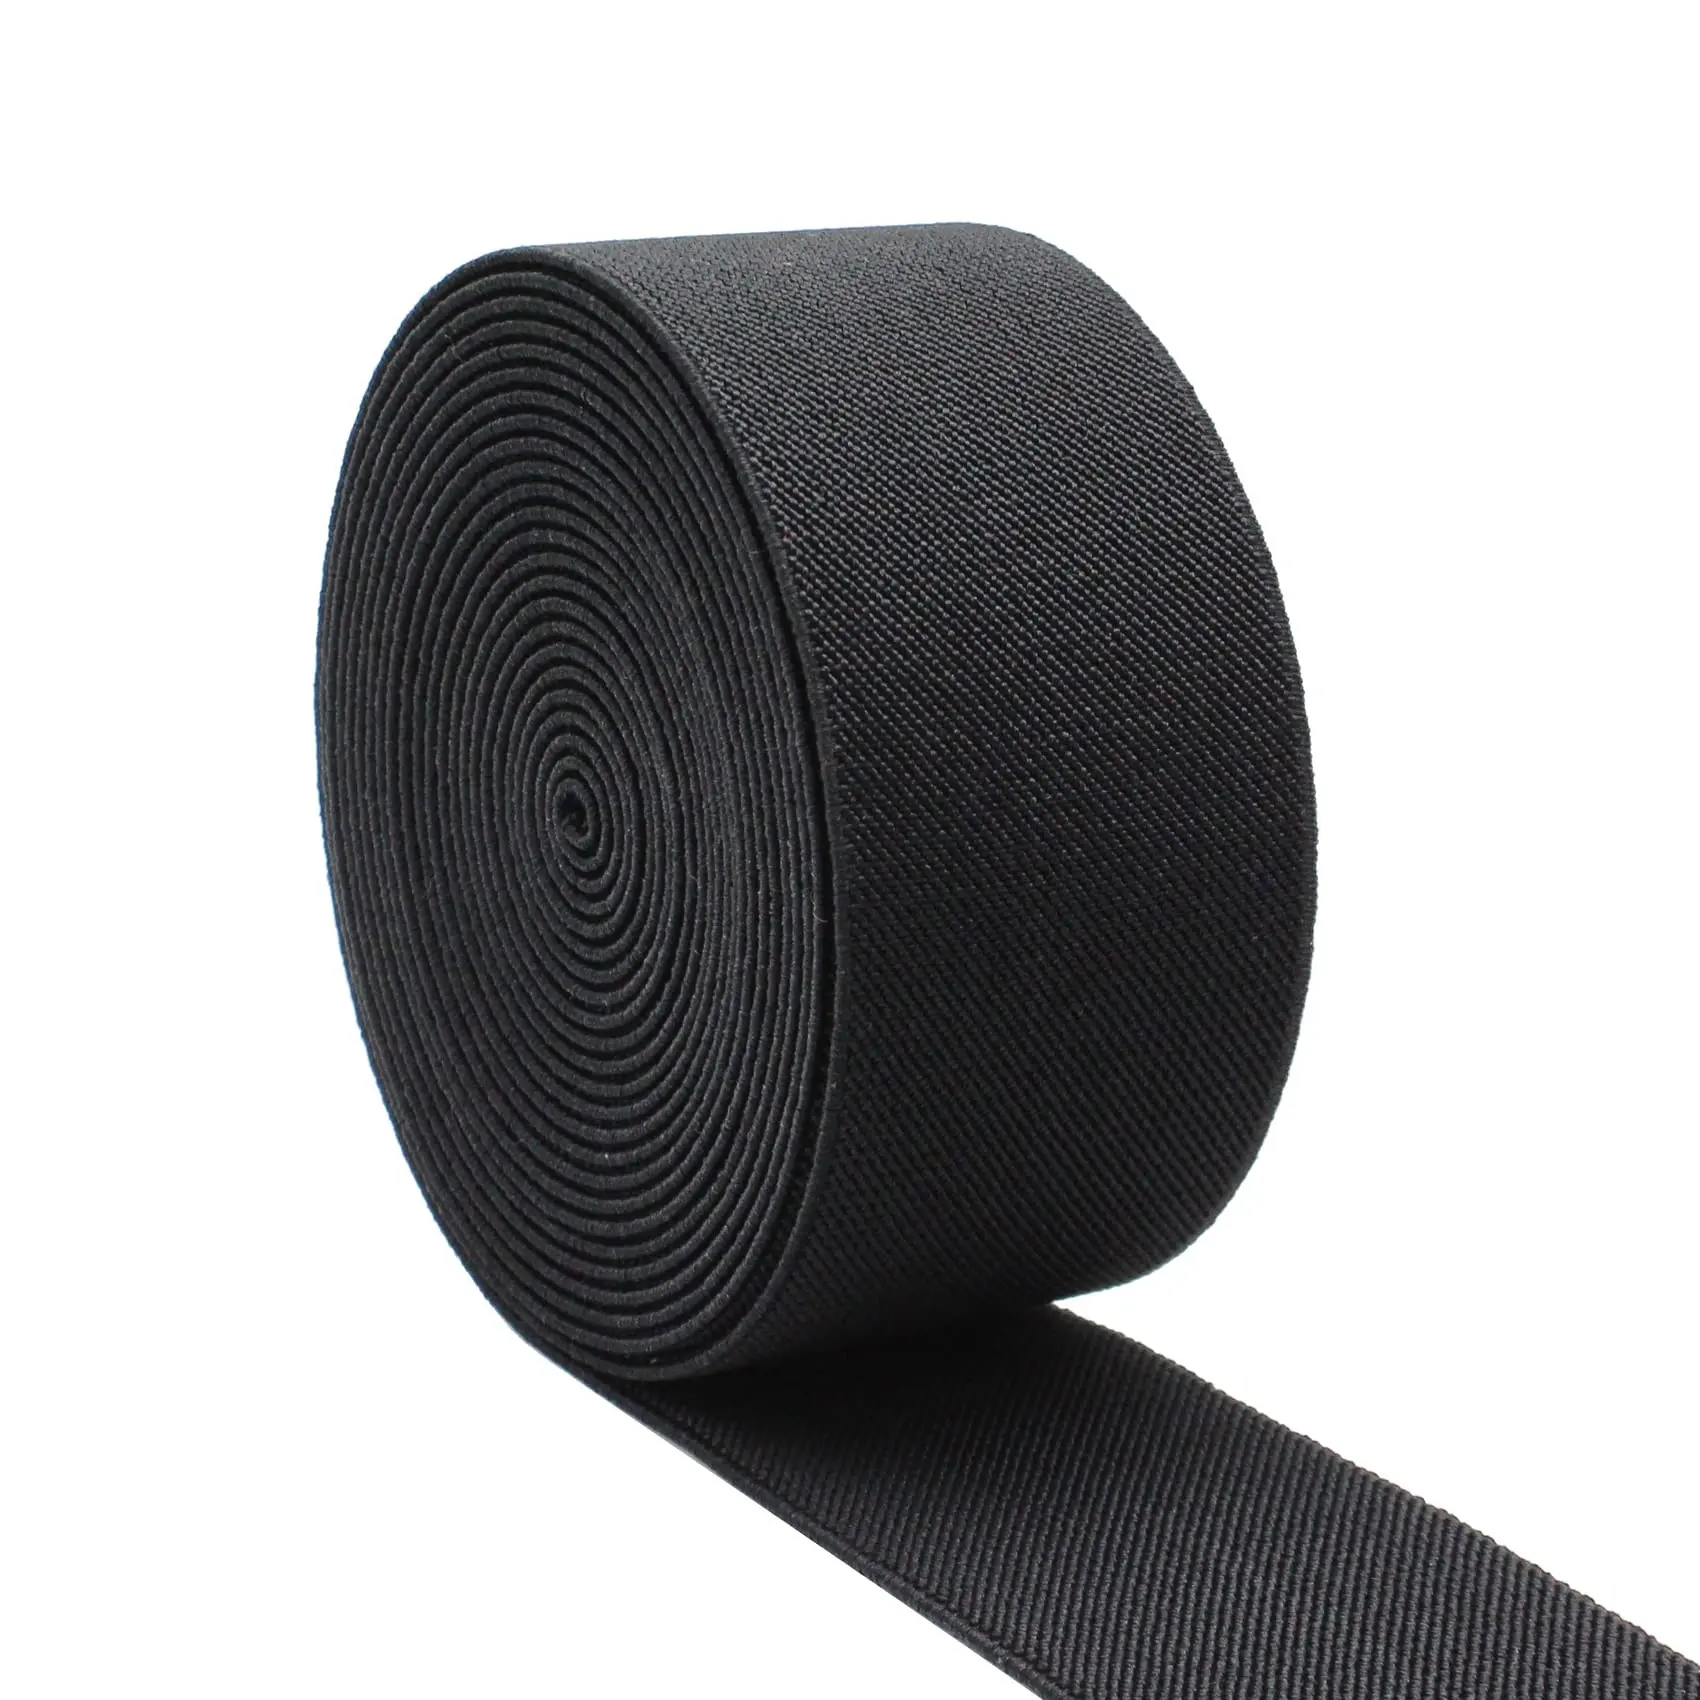 Fabrika kaynağı doğrudan kalın Polyester dimi elastik bant kaliteli siyah elastik bant